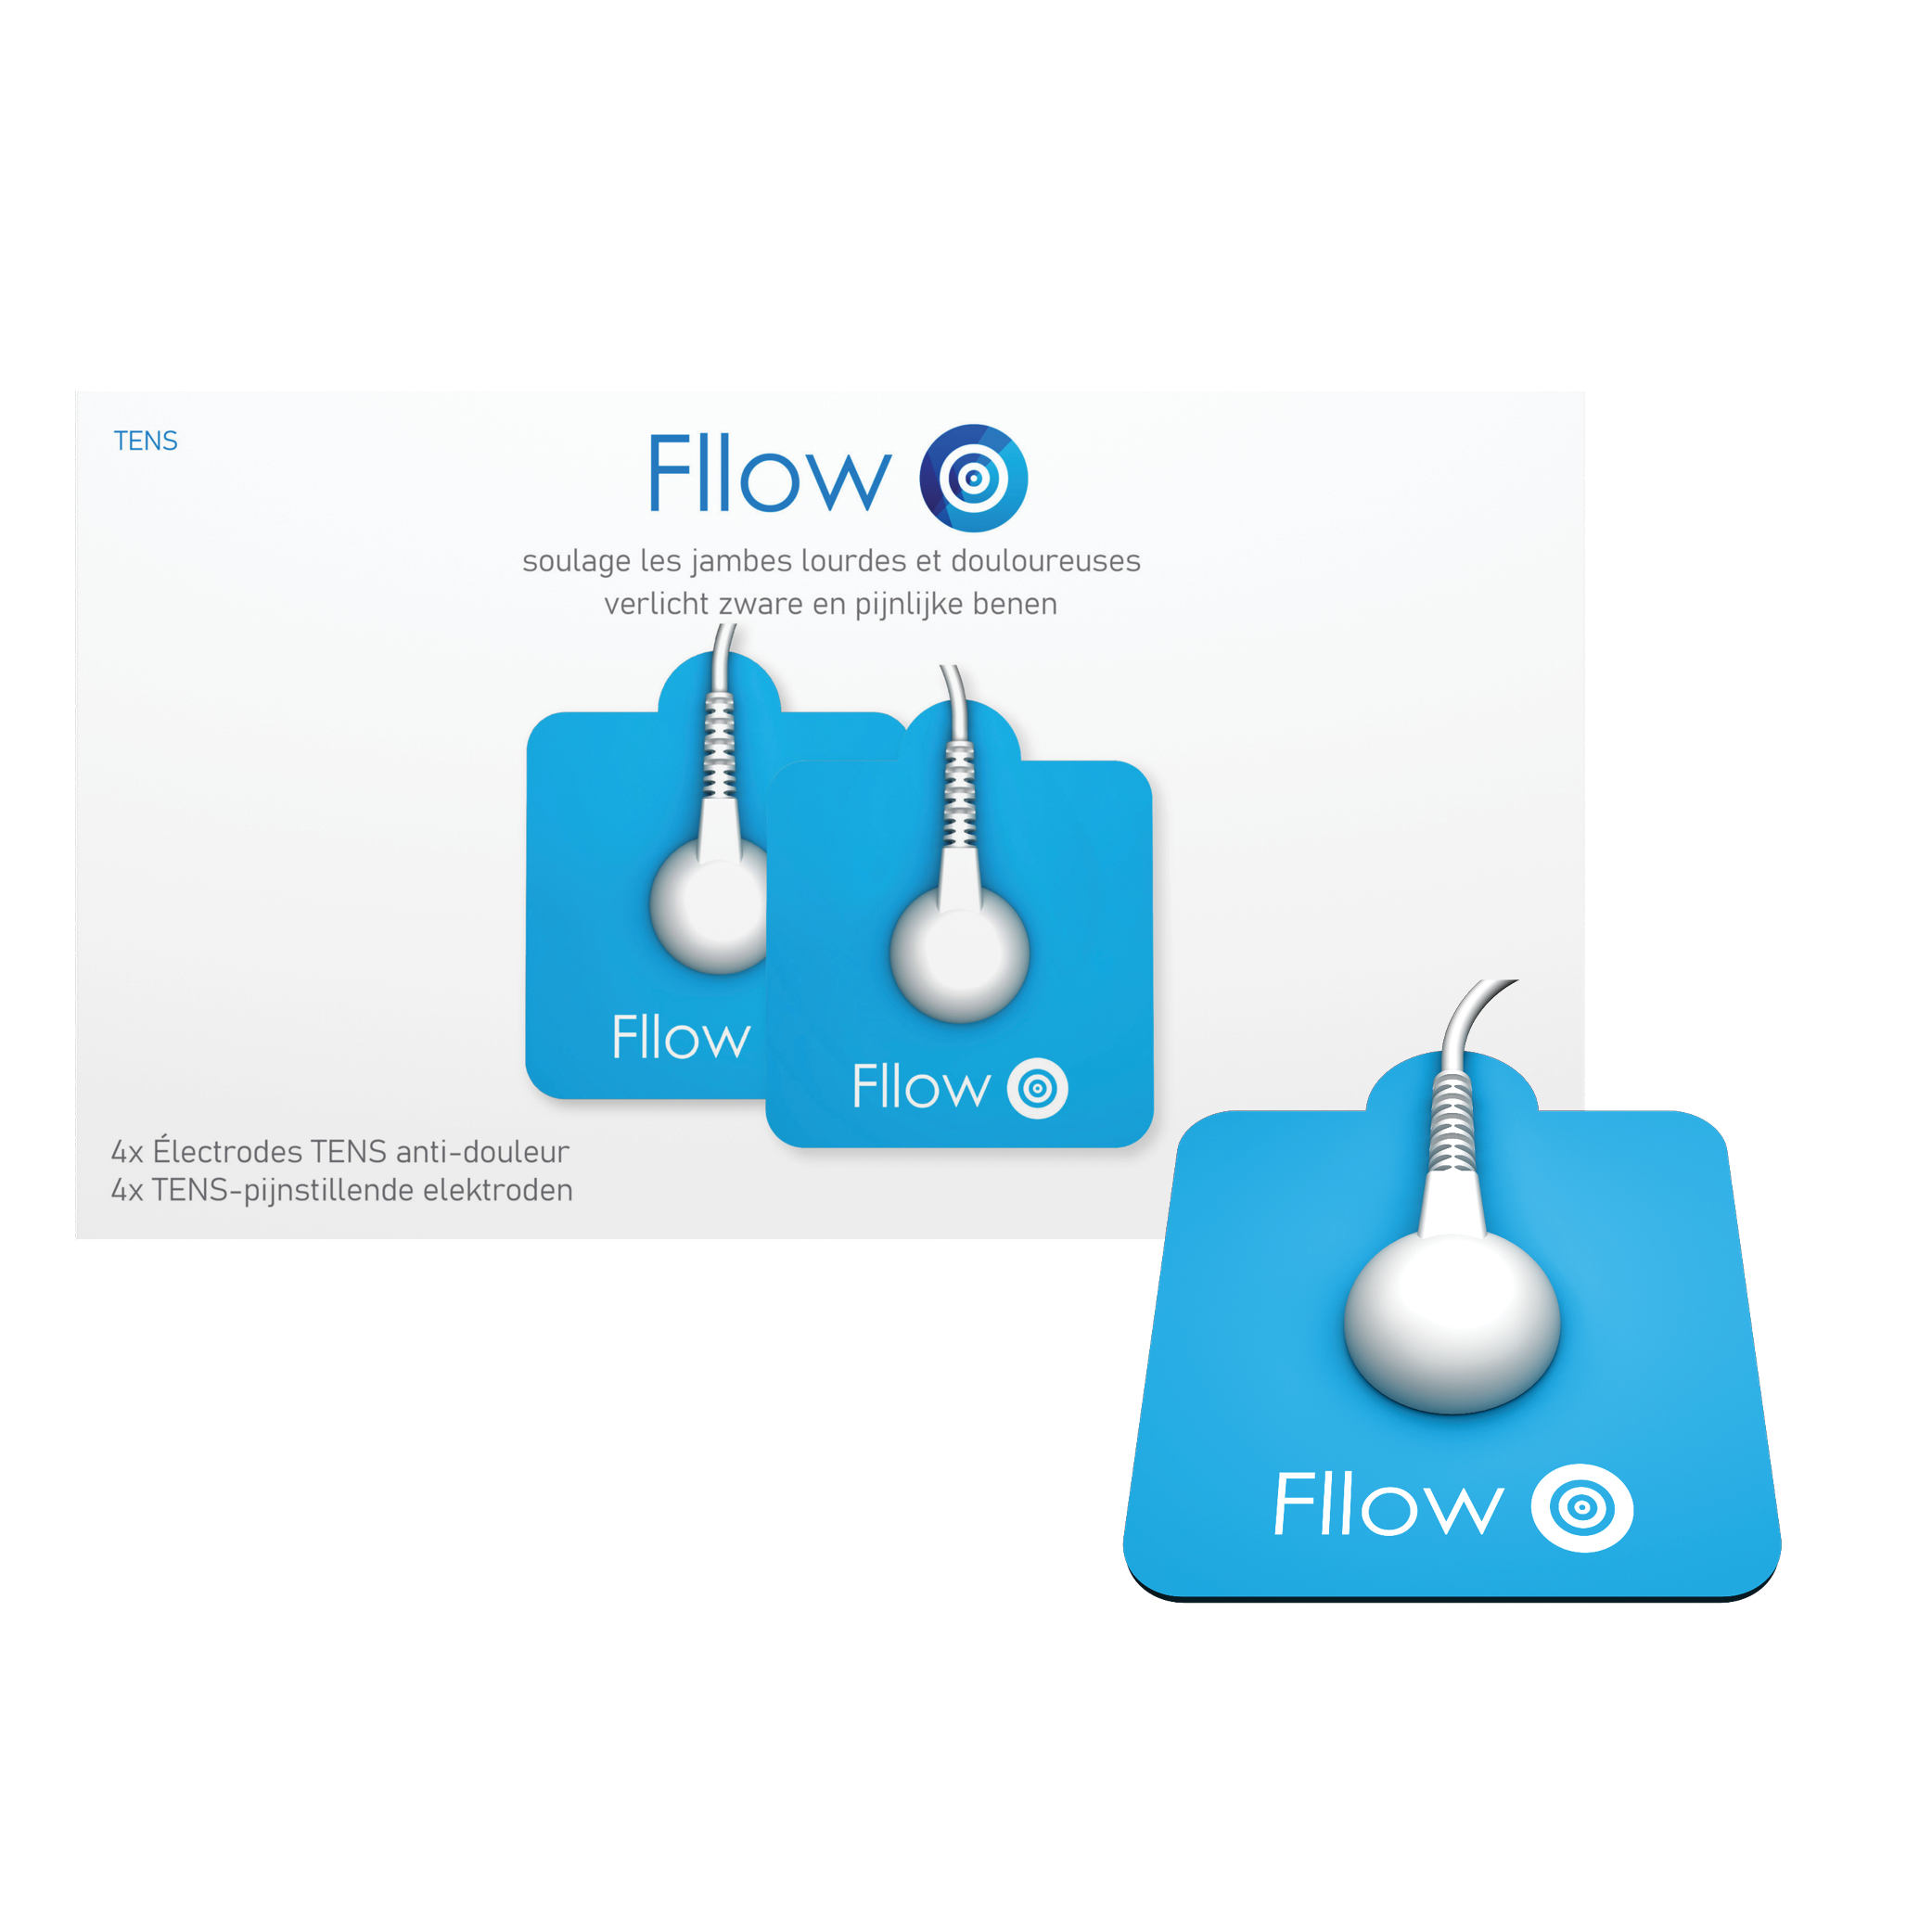 Fllow_TENS_elektroden